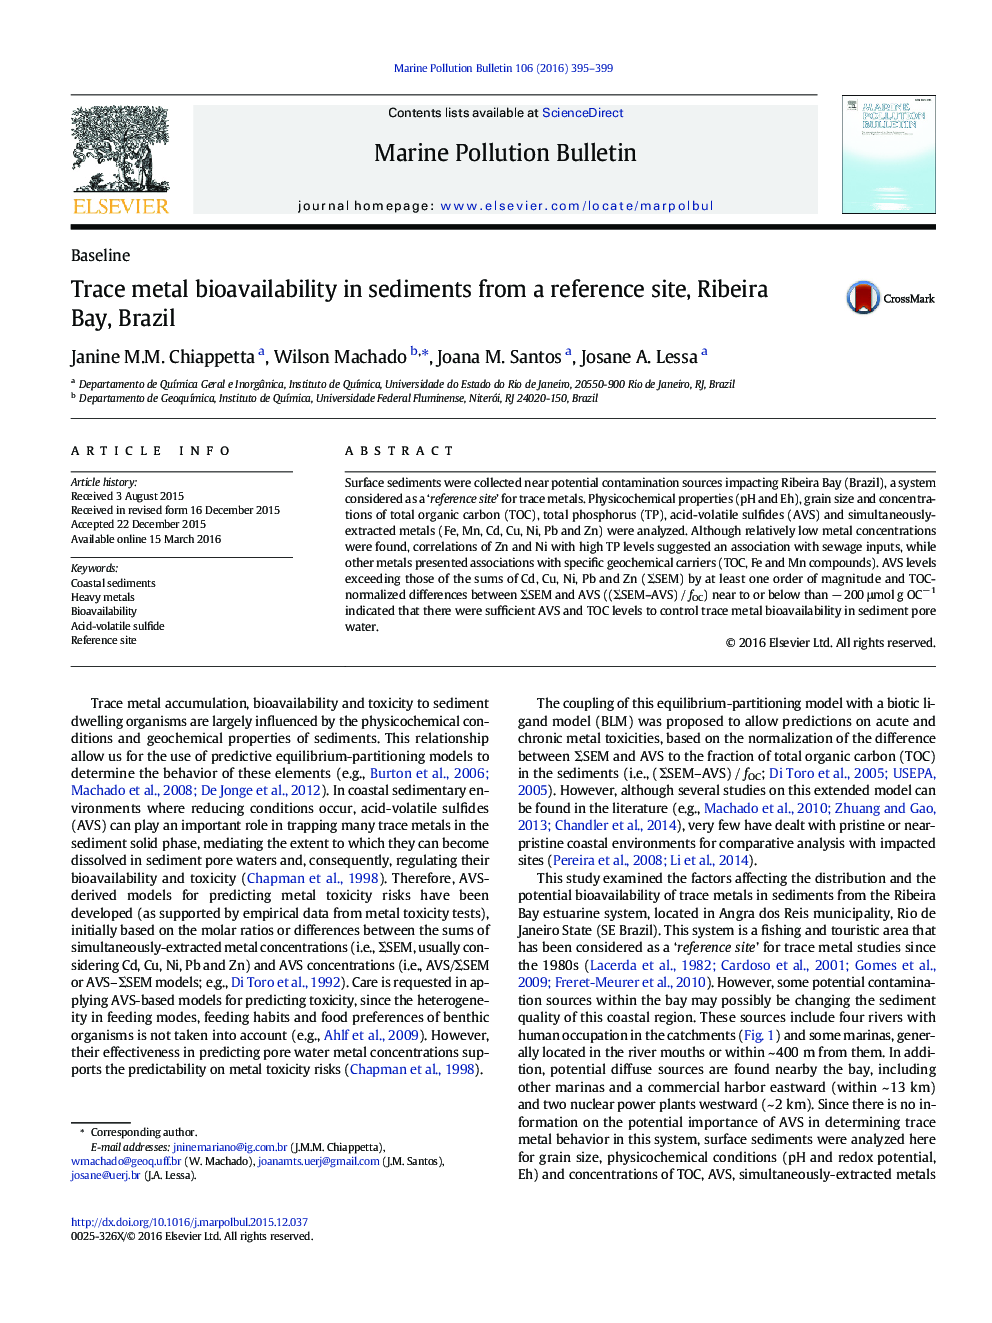 ردیابی بیولوژیک فلز در دسترس در رسوبات از یک سایت مرجع، ریبیرا خلیج، برزیل